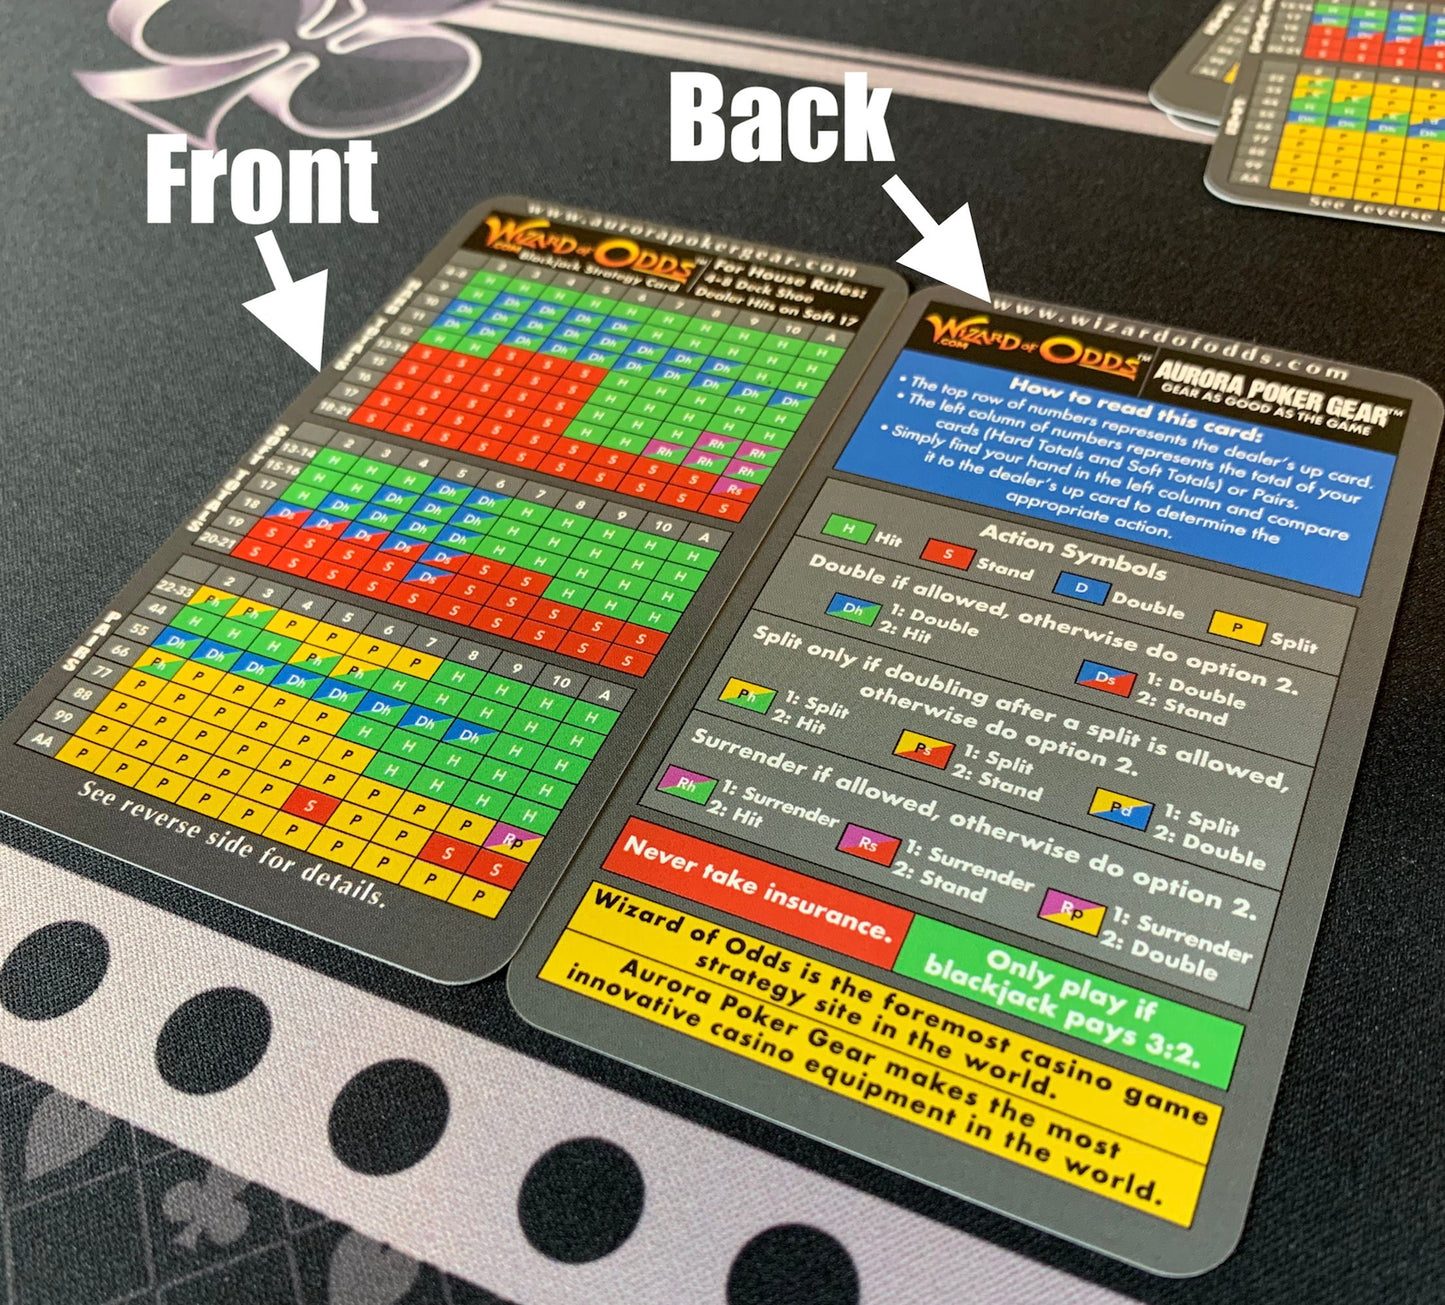 Wizard of Odds Blackjack Strategy Cards - 4-8 Deck, Dealer Stands Soft 17